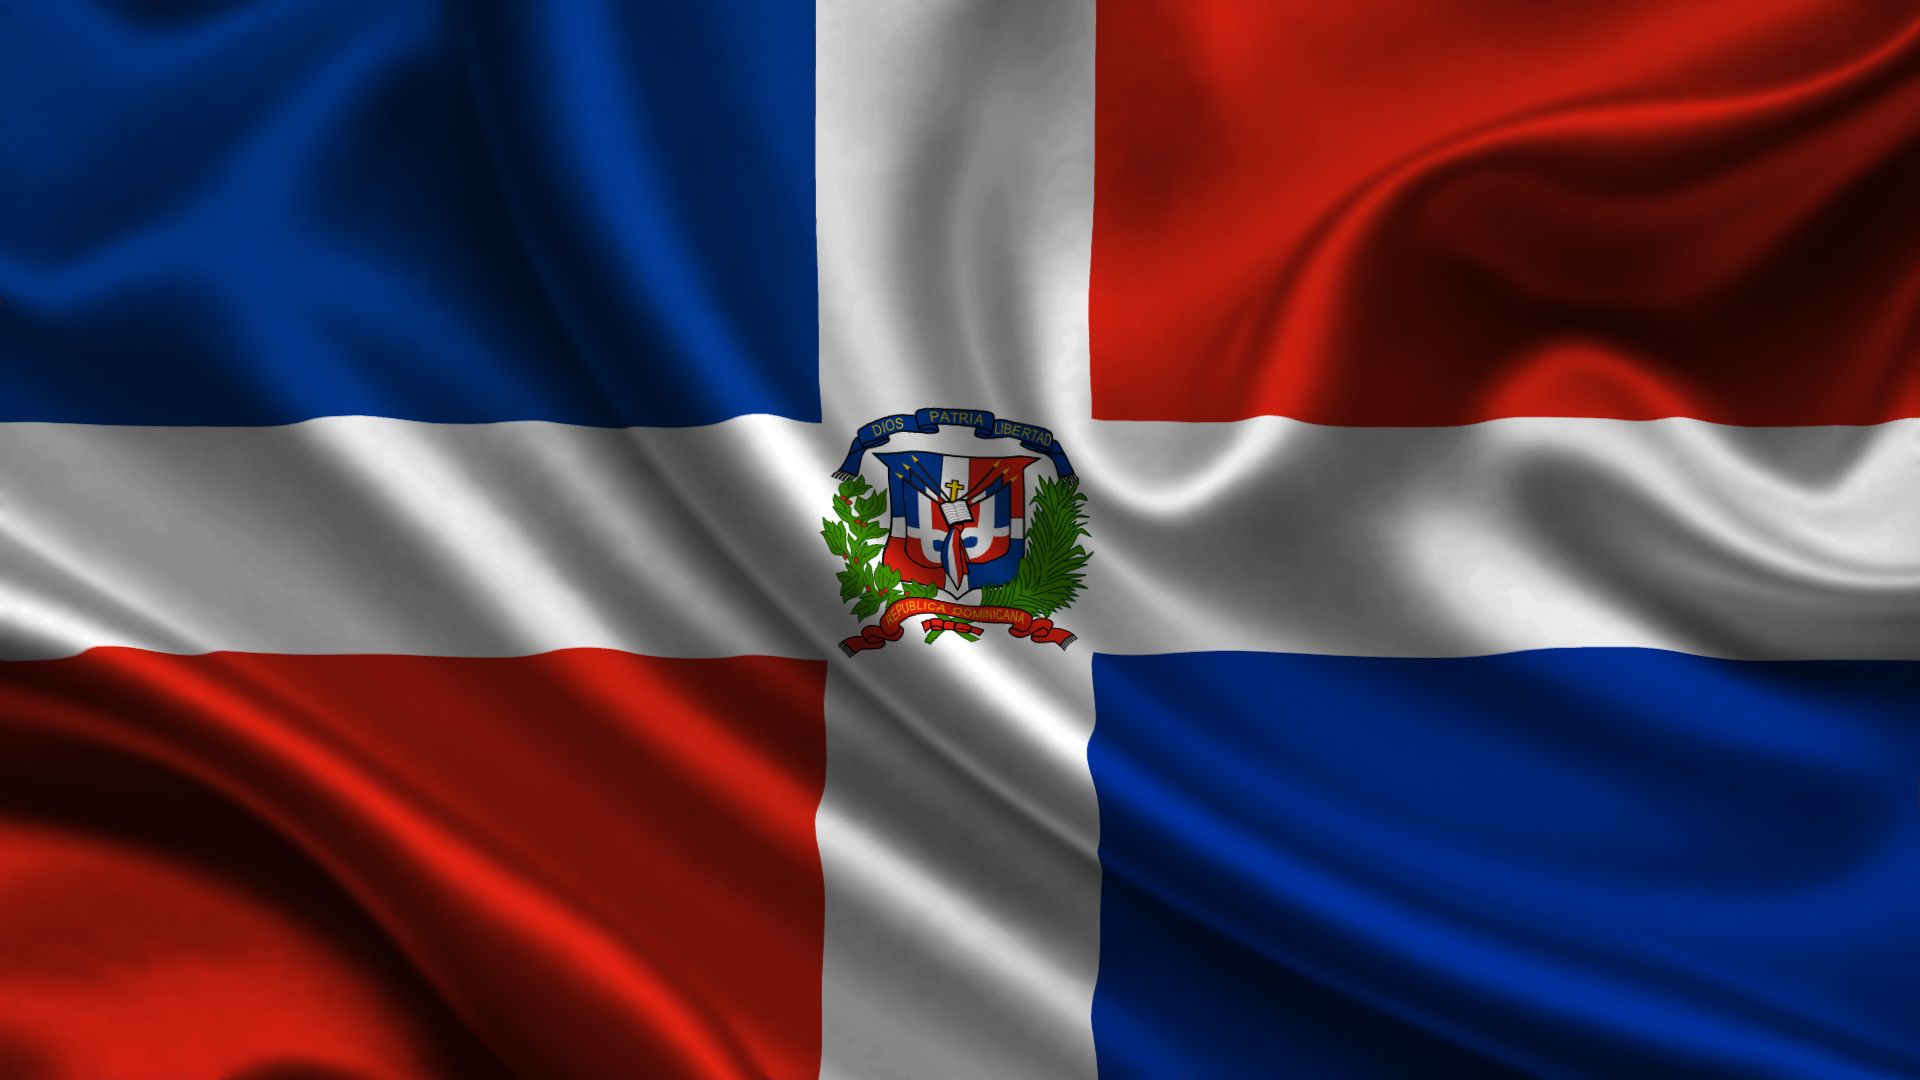 himno nacional republica dominicana